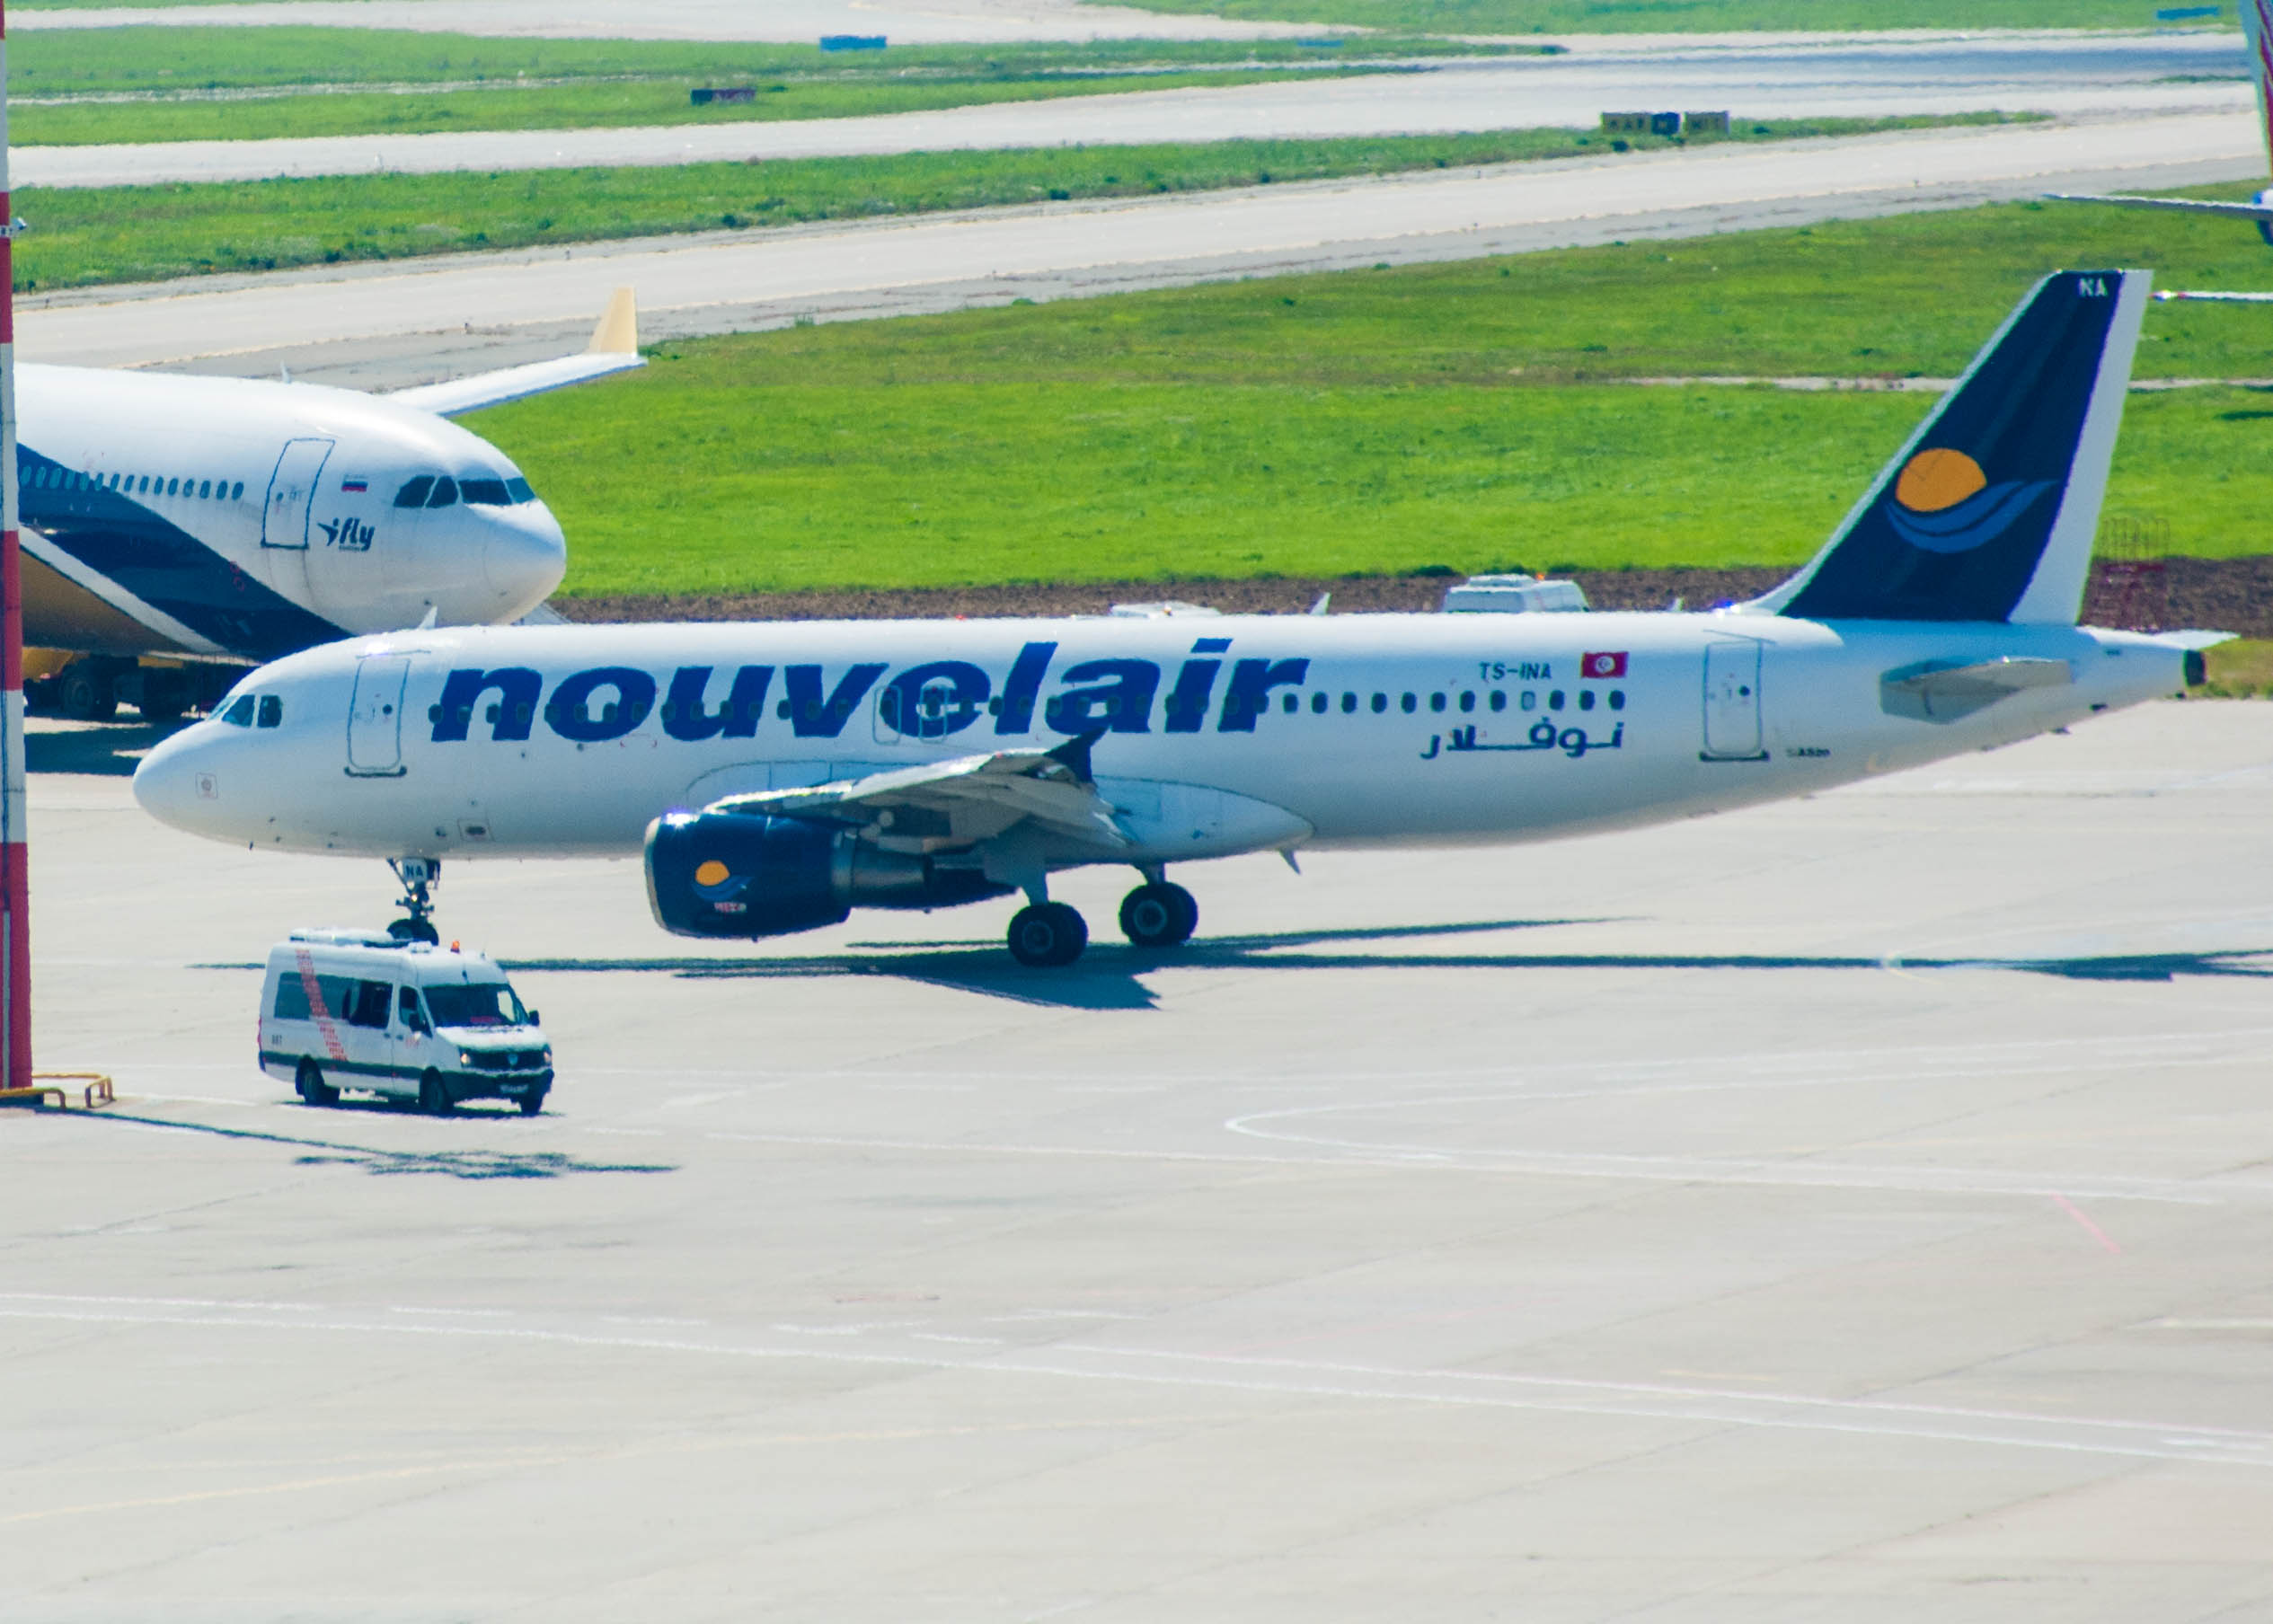 Международный аэропорт Внуково обслужил 25 тысяч пассажиров и 150 рейсов авиакомпании NouvelAir | Международный аэропорт Внуково